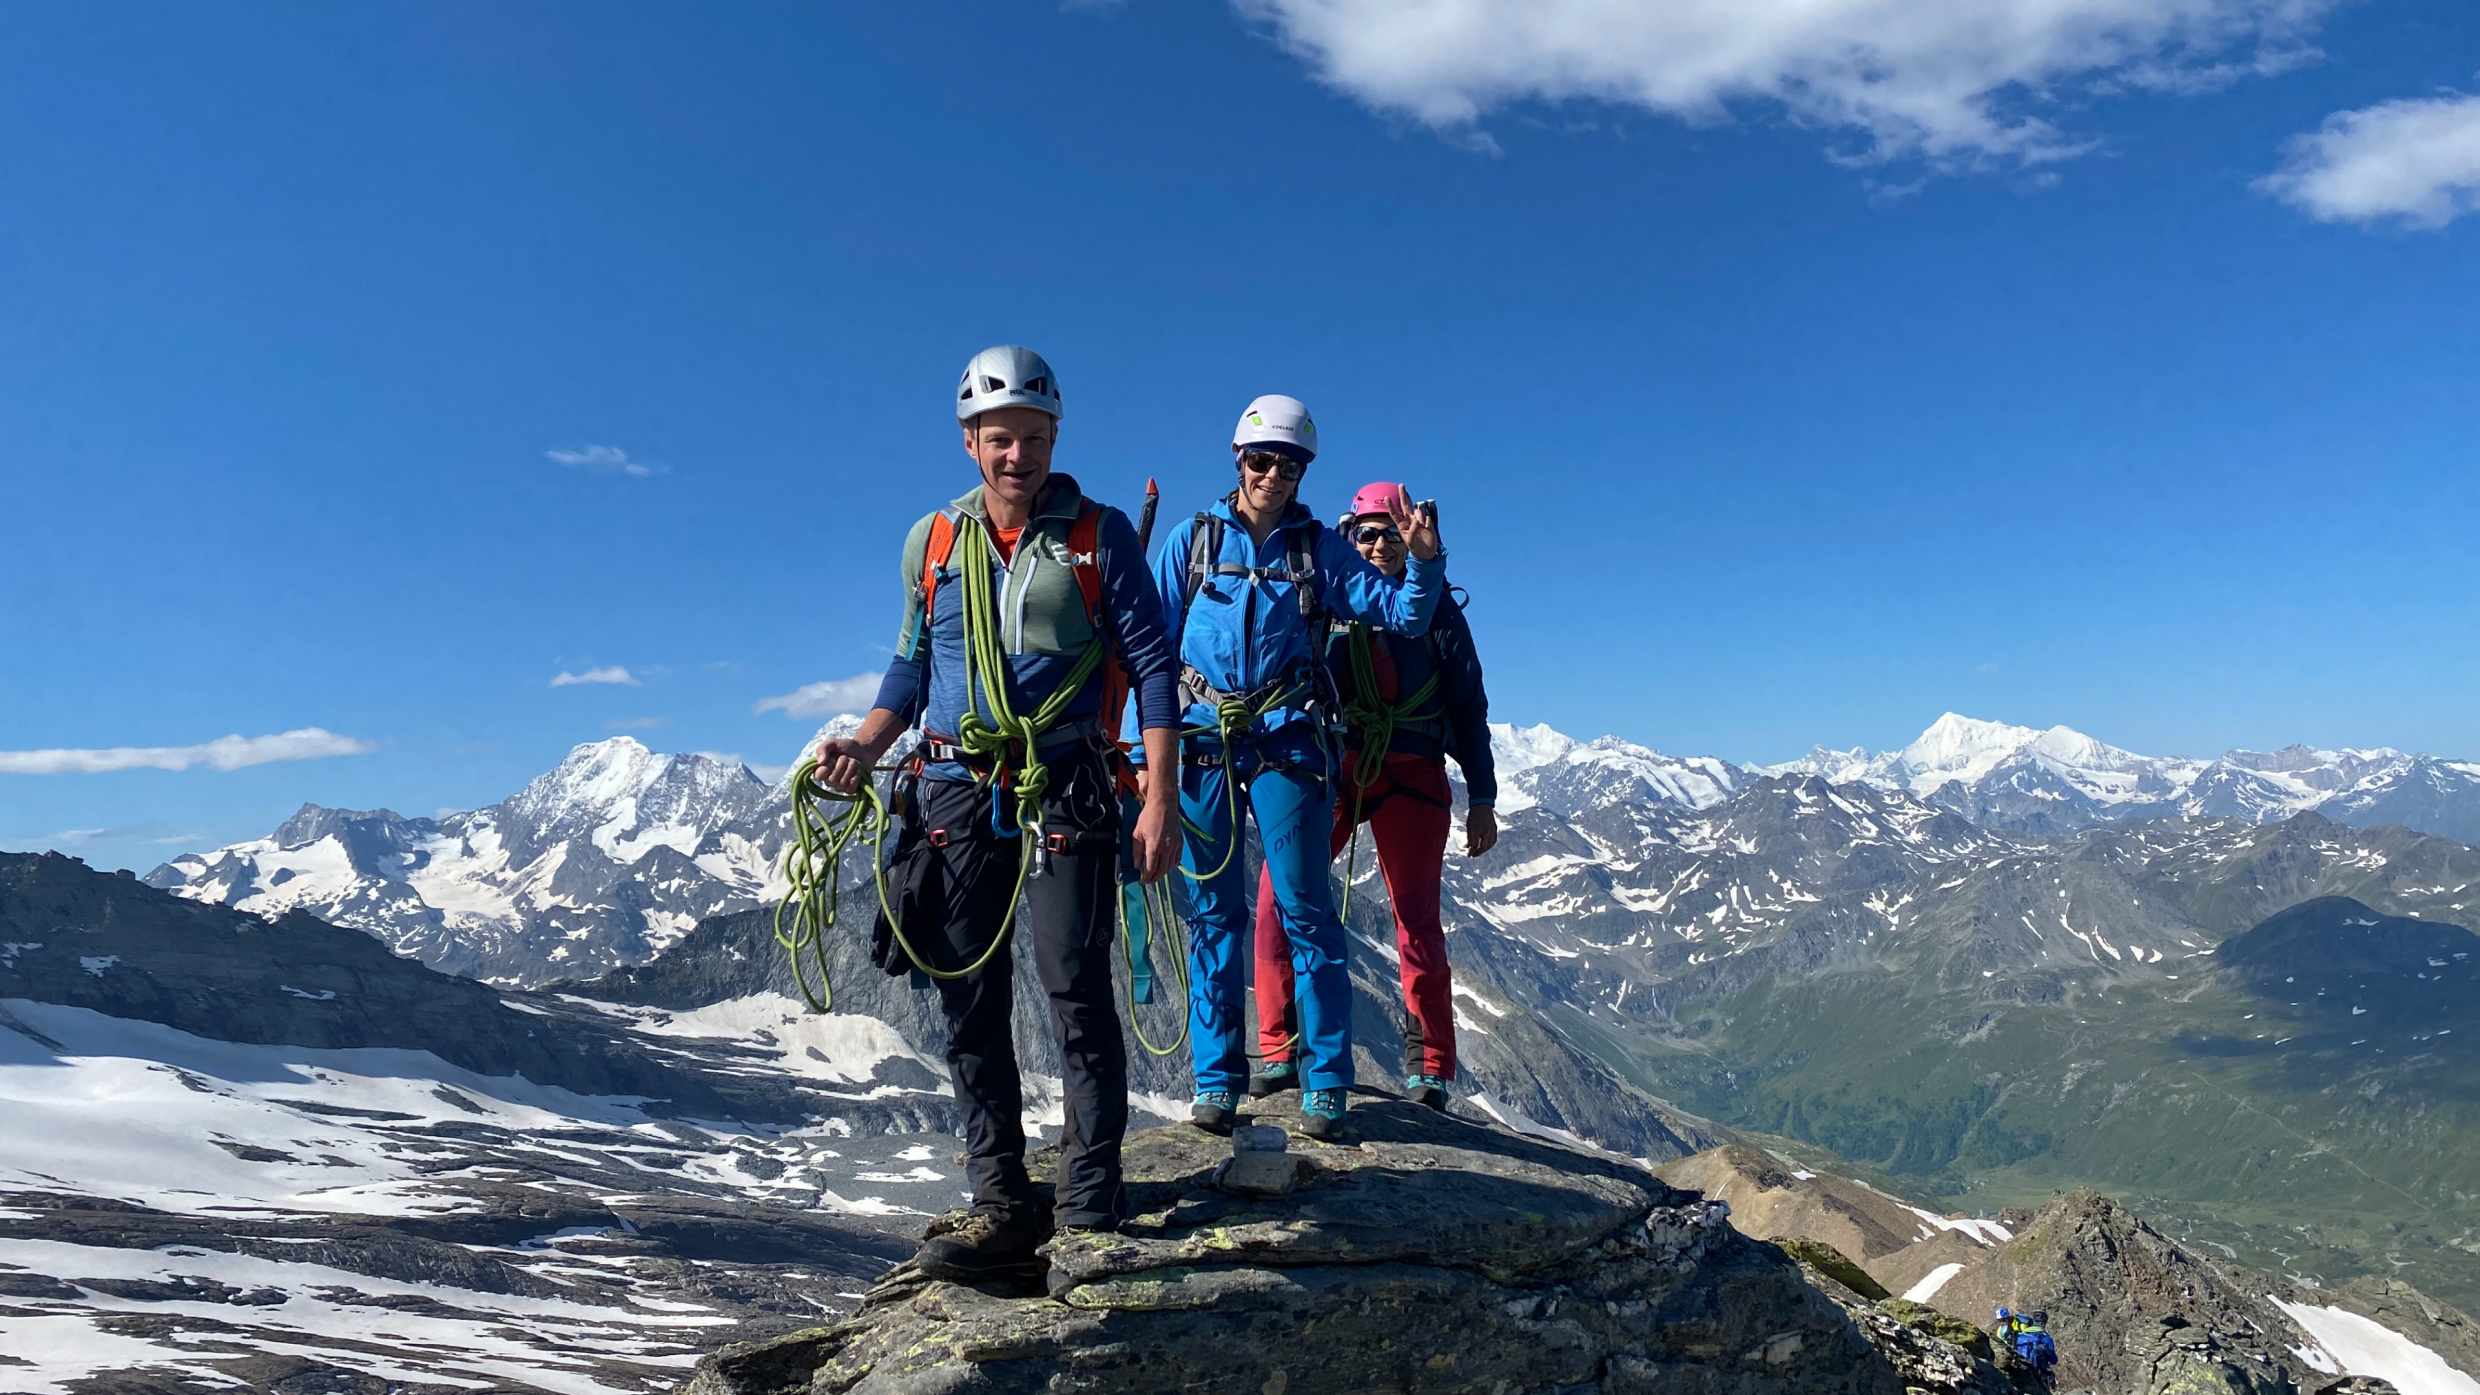 Berg+Ski: Beim Aufstieg zum Wasenhorn wird geklaxelt, balanciert und durch den Schnee gestapft